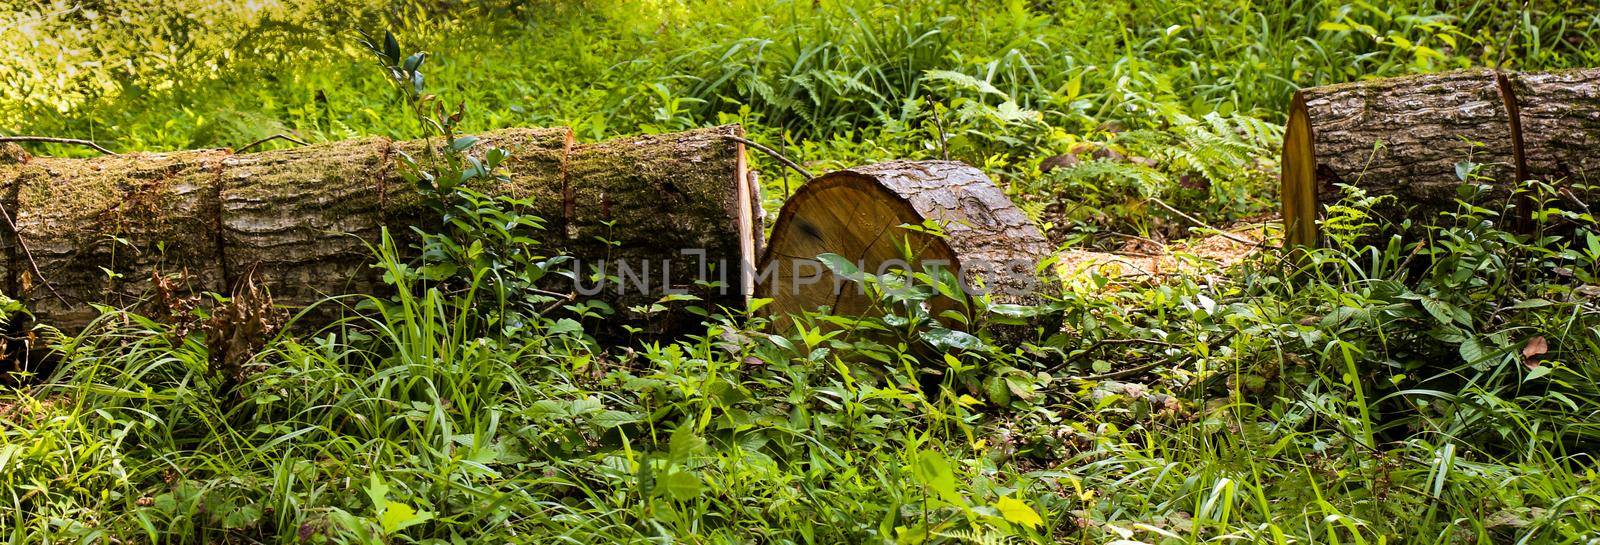 Freshly cut tree logs  in garden by berkay